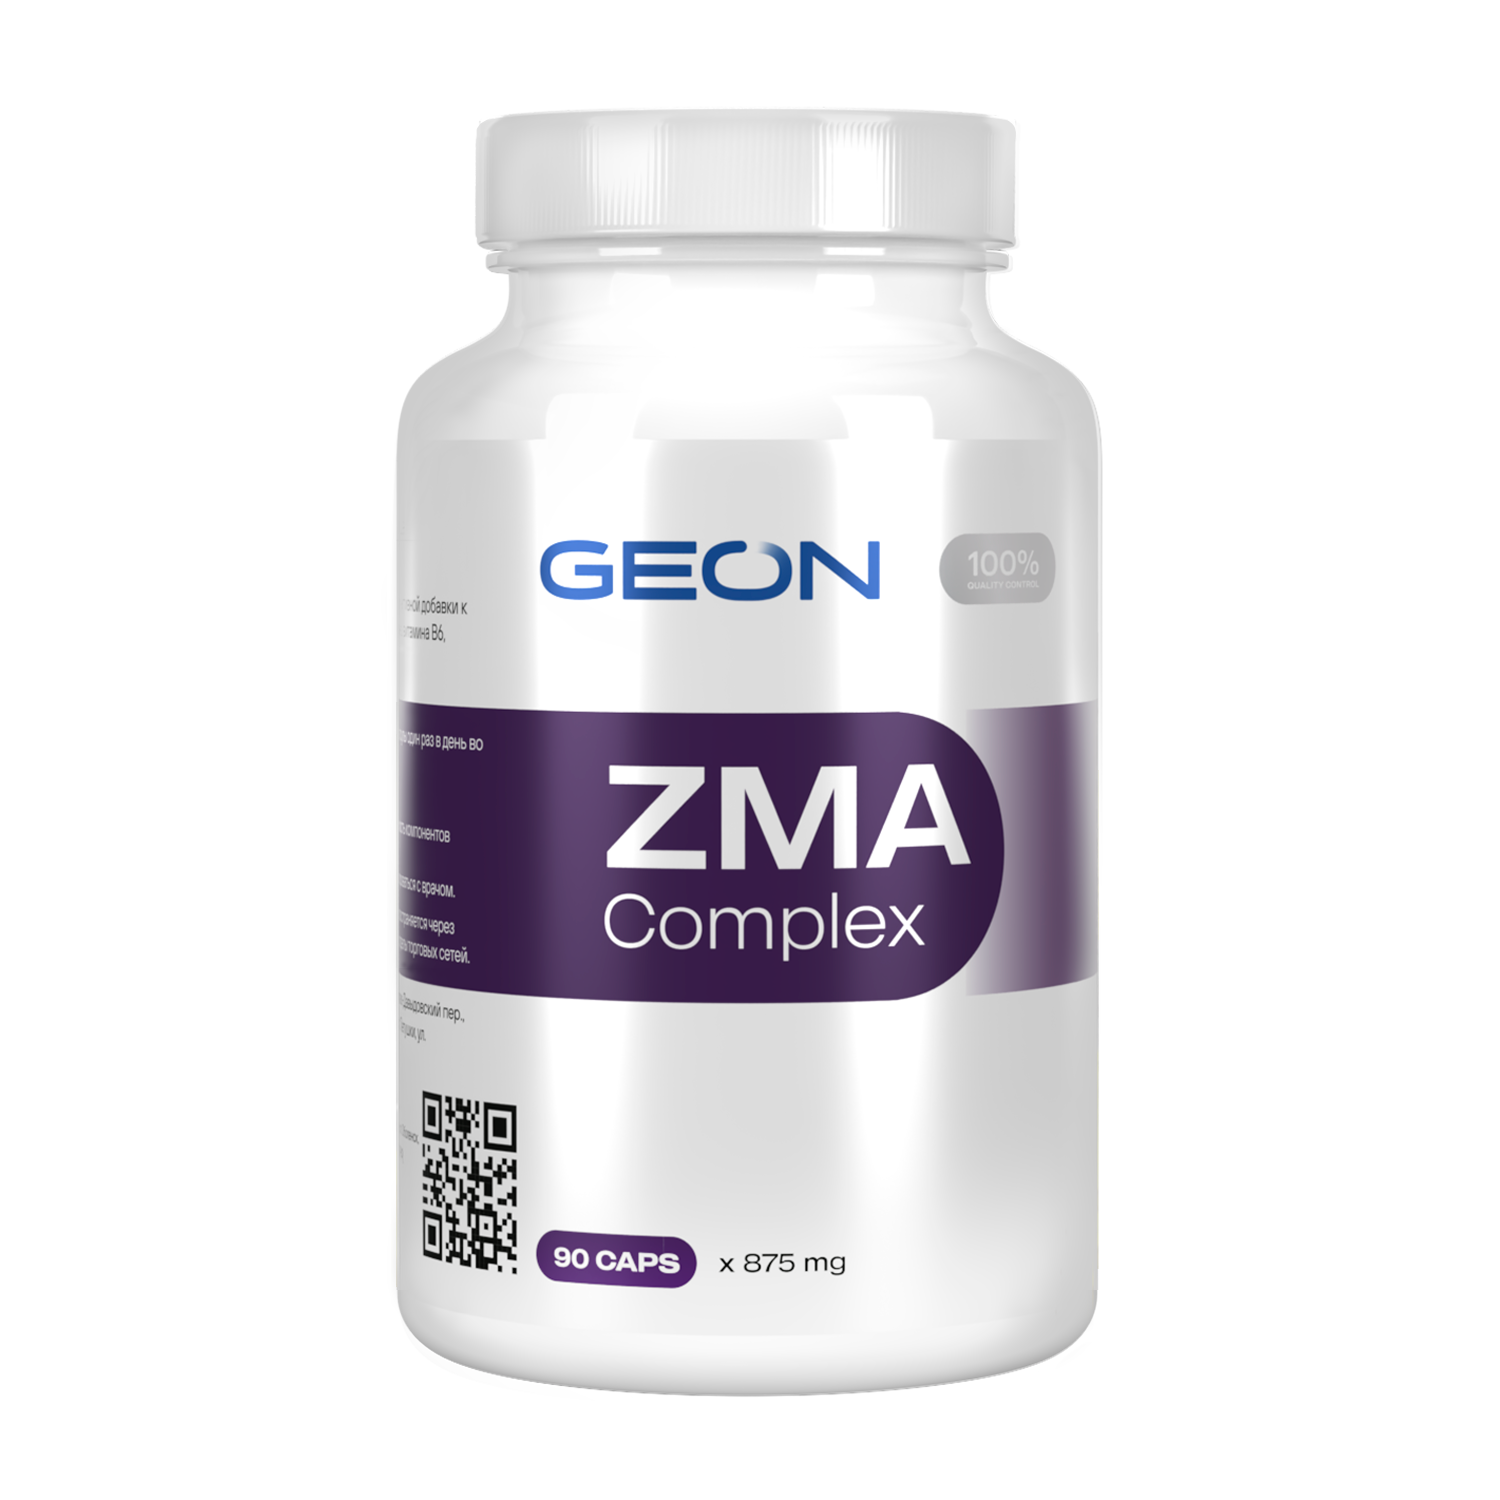 GEON ZMA complex